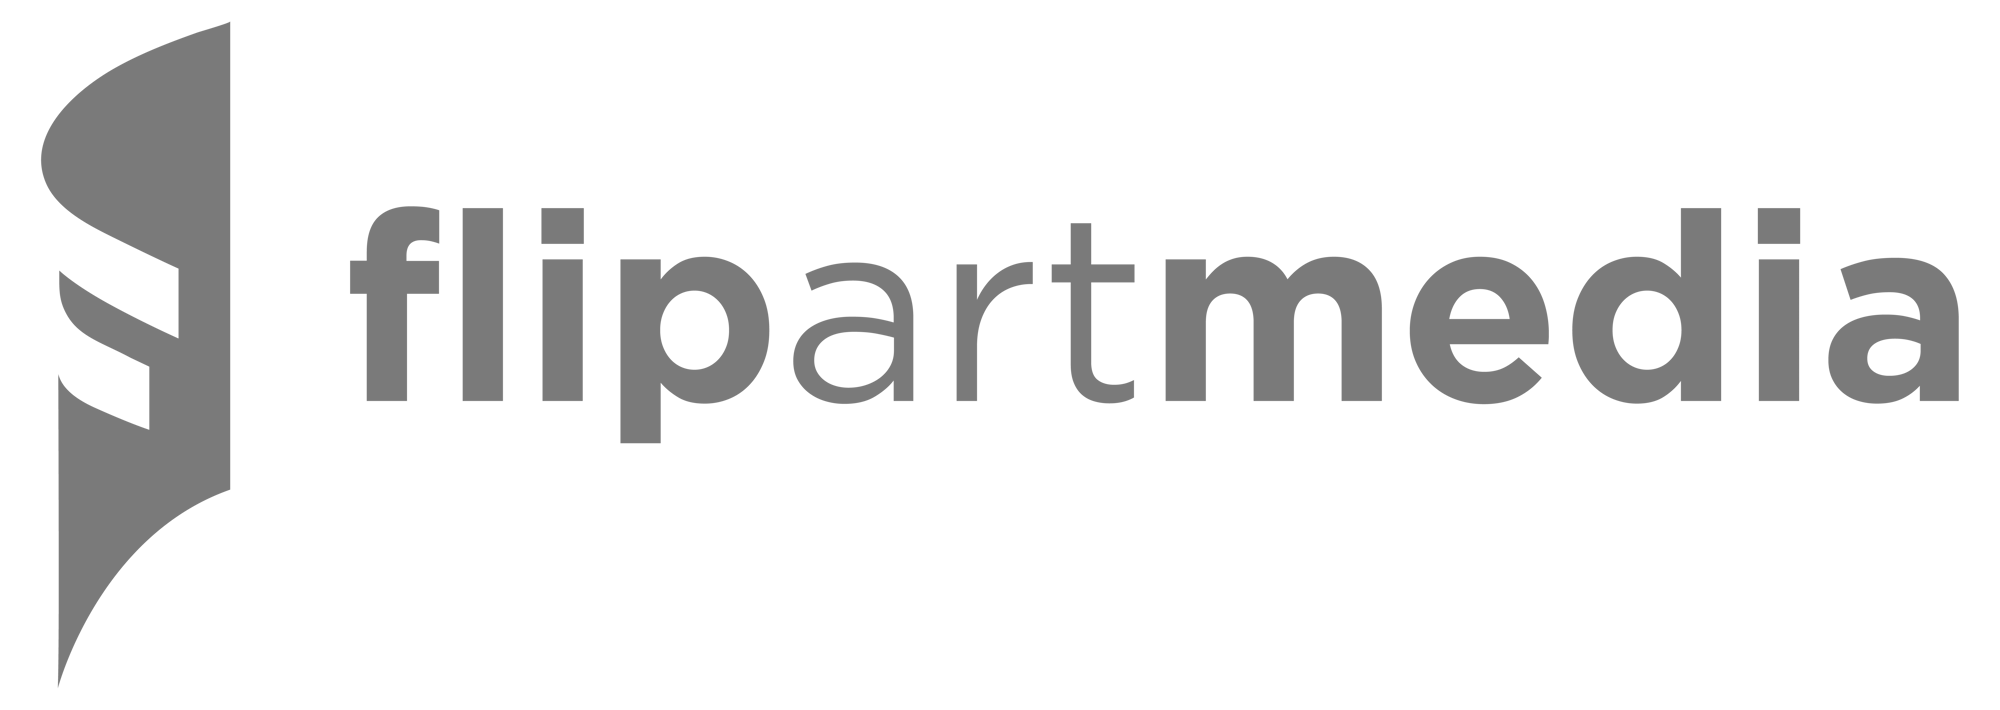 flipartmedia logo2